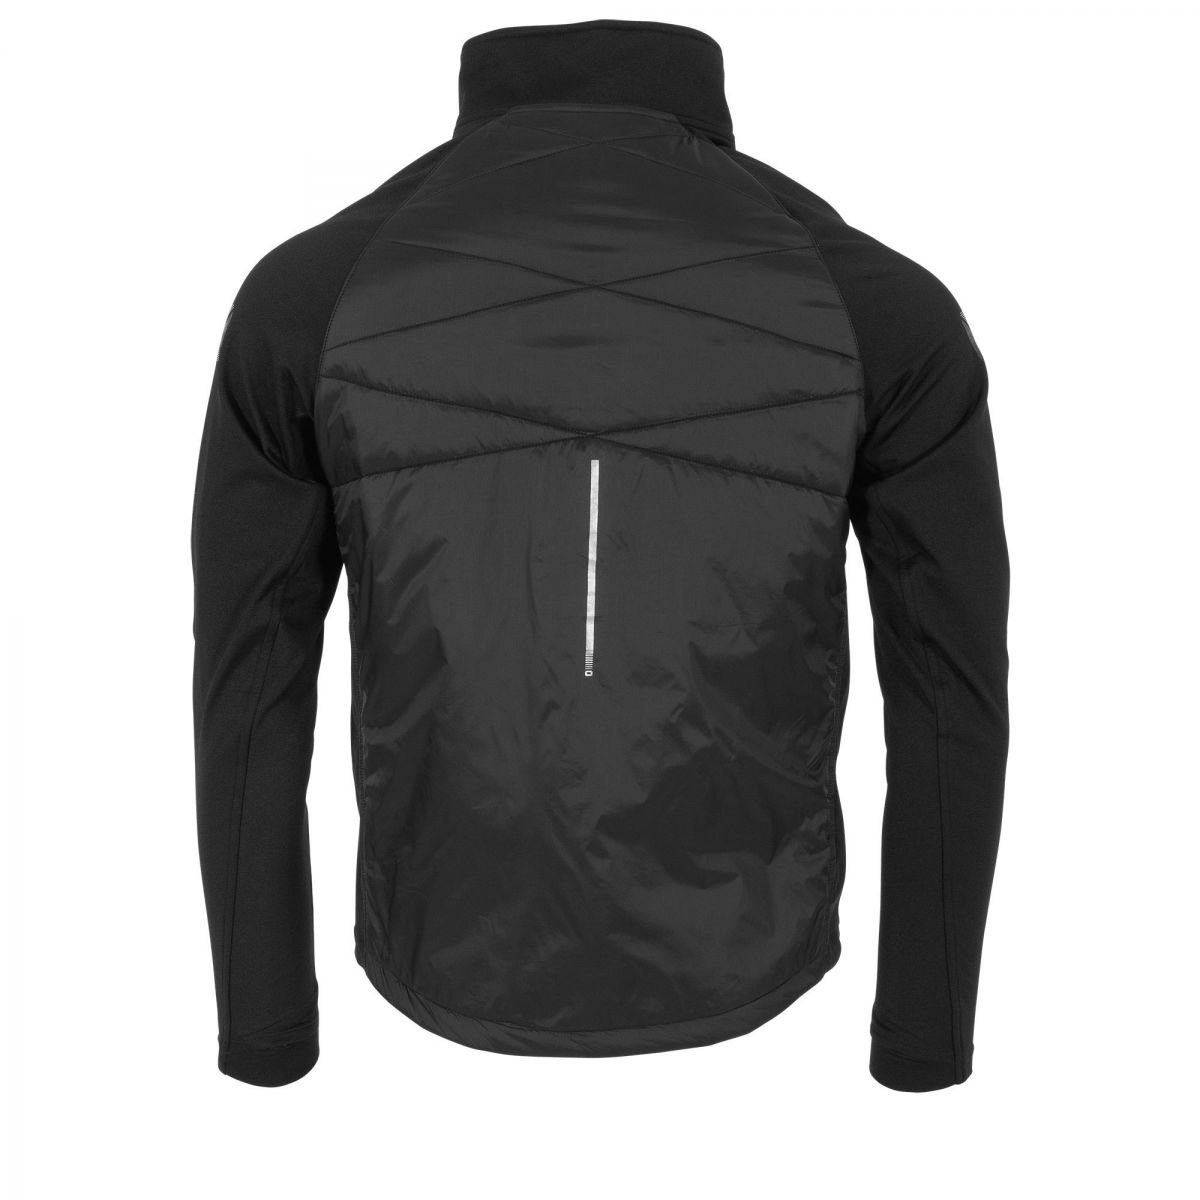 Onsala Discgolf Functionals Thermal Jacket Unisex - Teamsales store -  Sportprodukter till ett bra pris